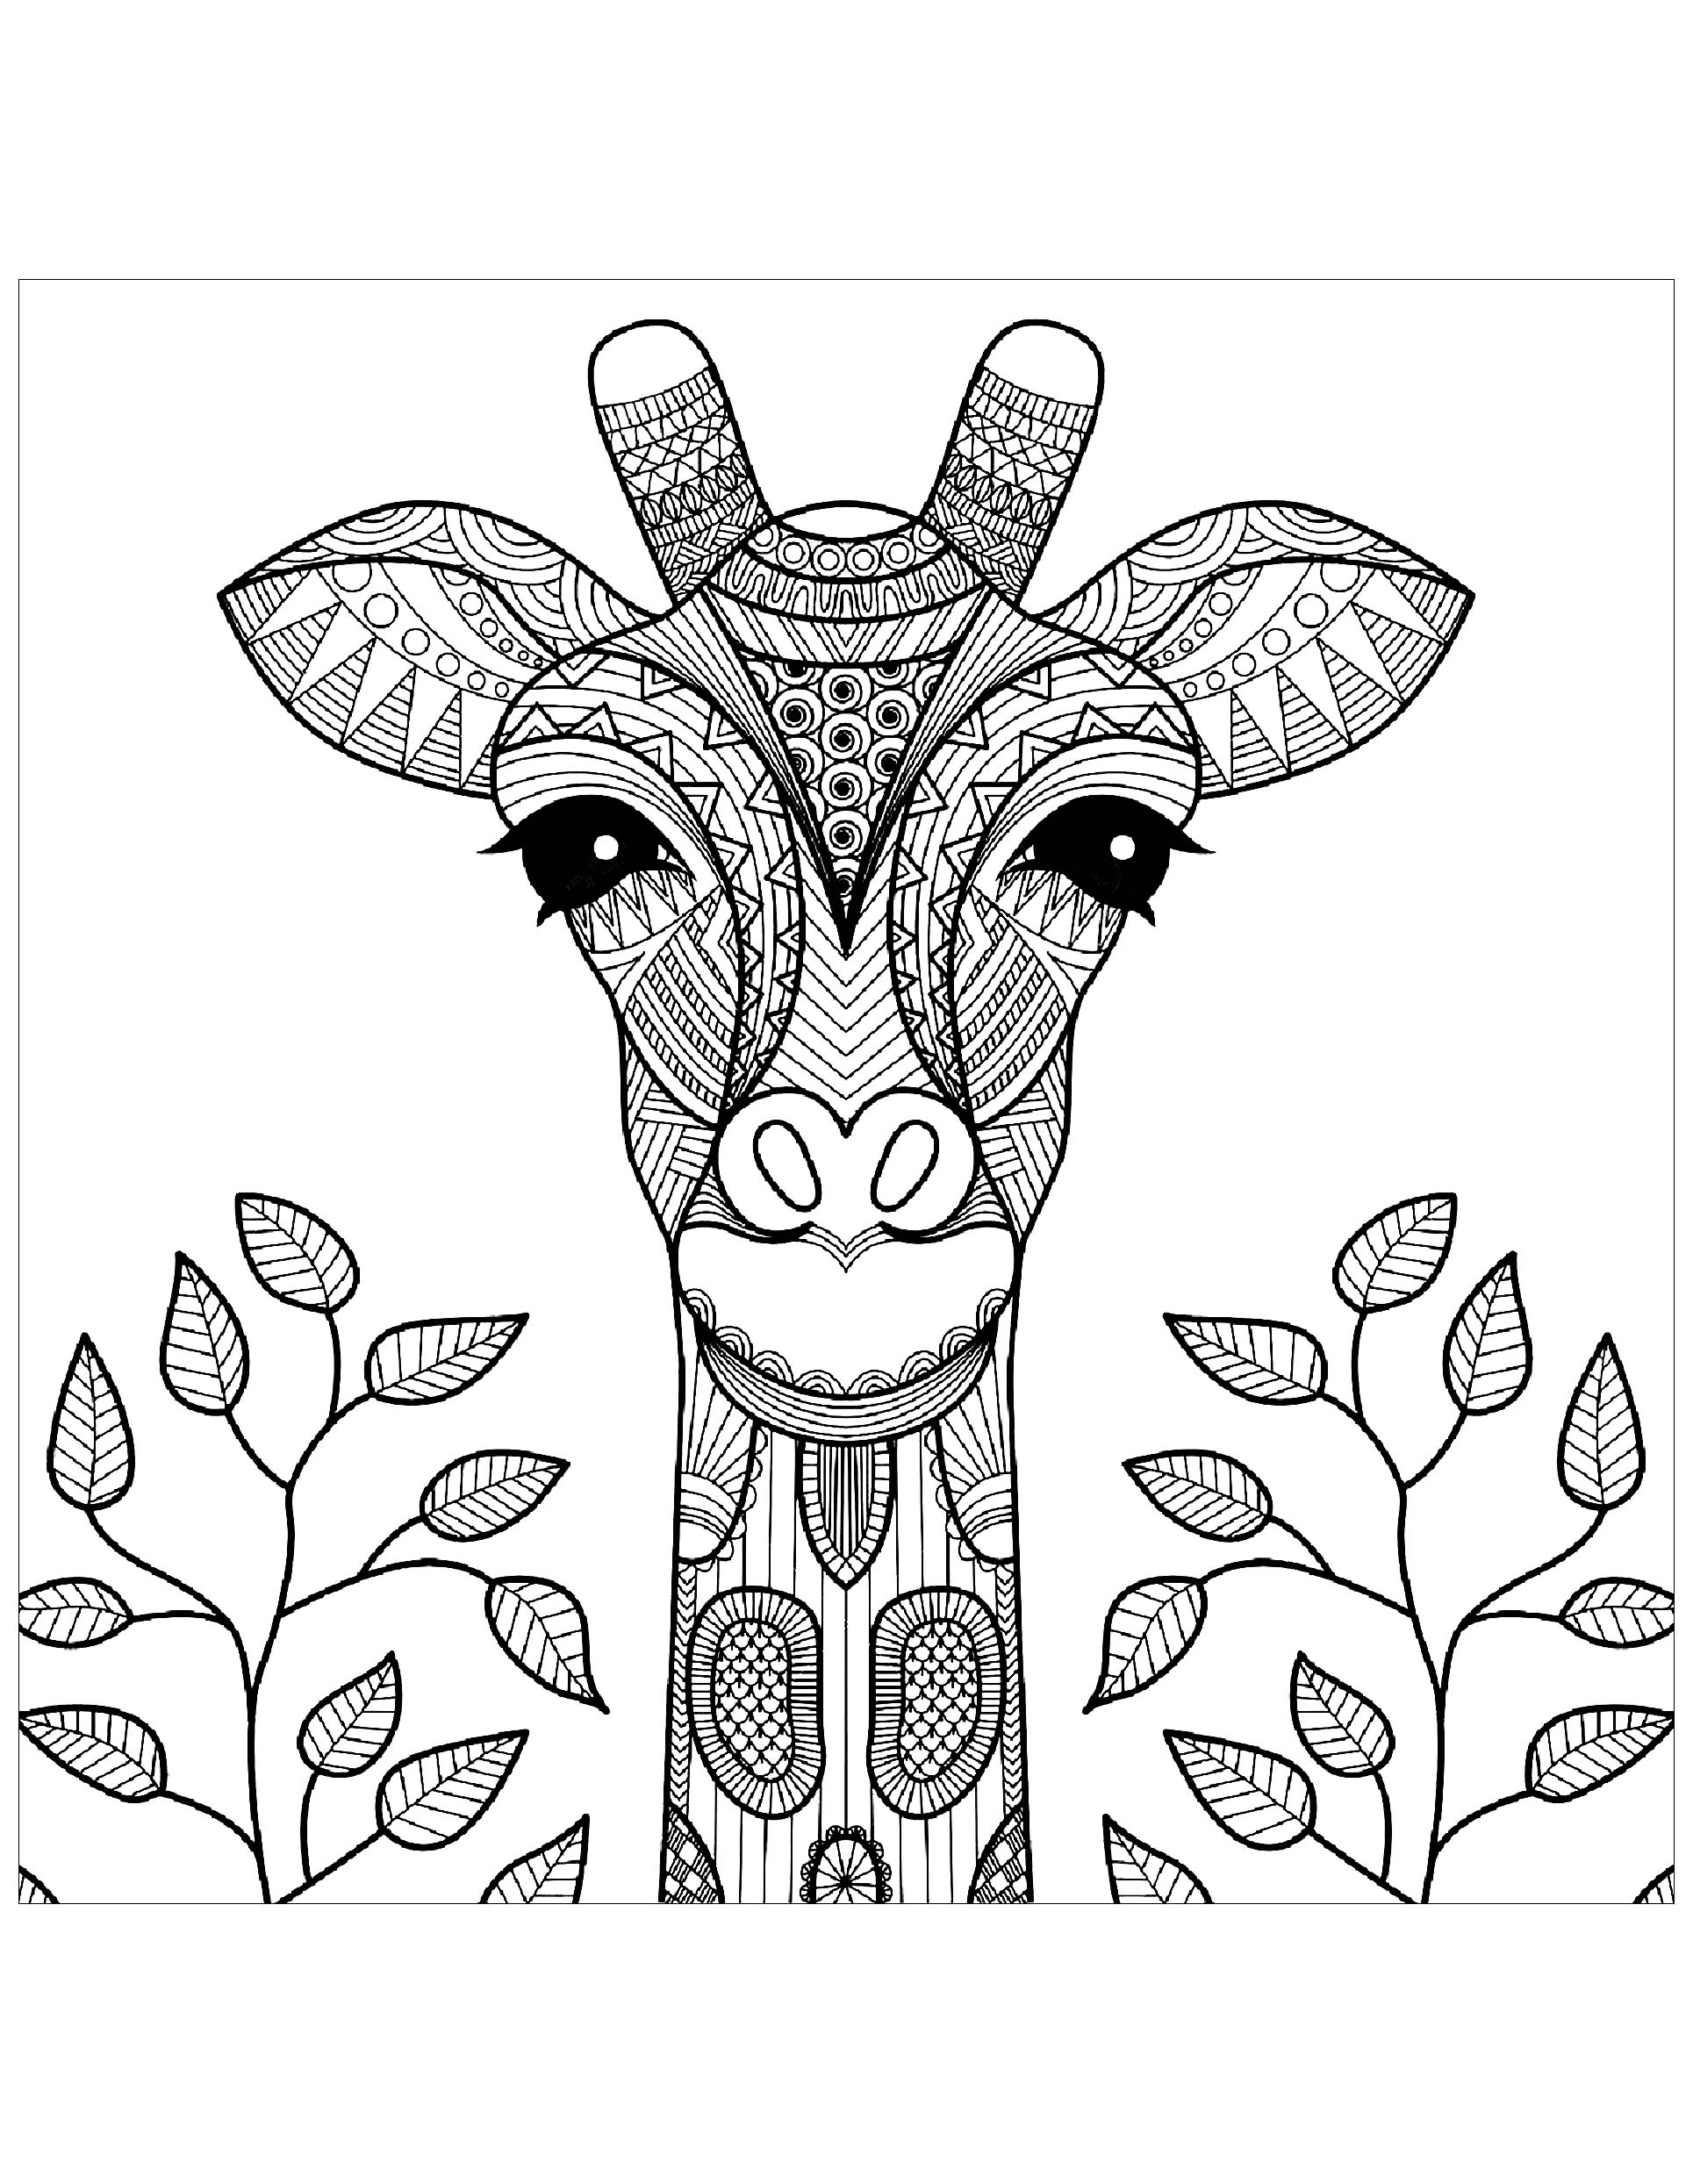 Desenhos para colorir para crianças de Girafas para imprimir, Artista : Bimdeedee   Fonte : 123rf